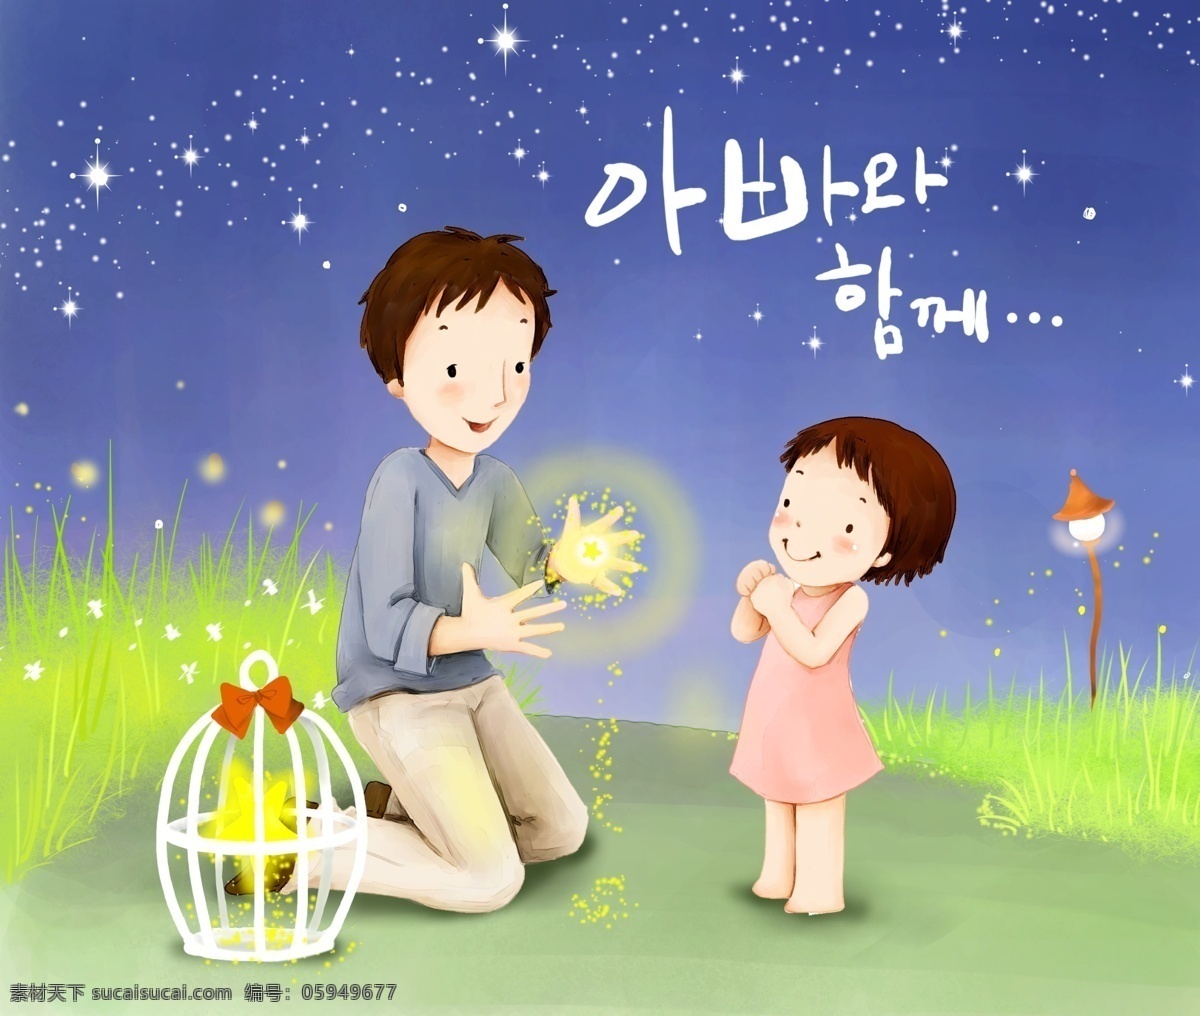 欢乐家庭 卡通漫画 韩式风格 分层 psd0006 设计素材 家庭生活 分层插画 psd源文件 蓝色